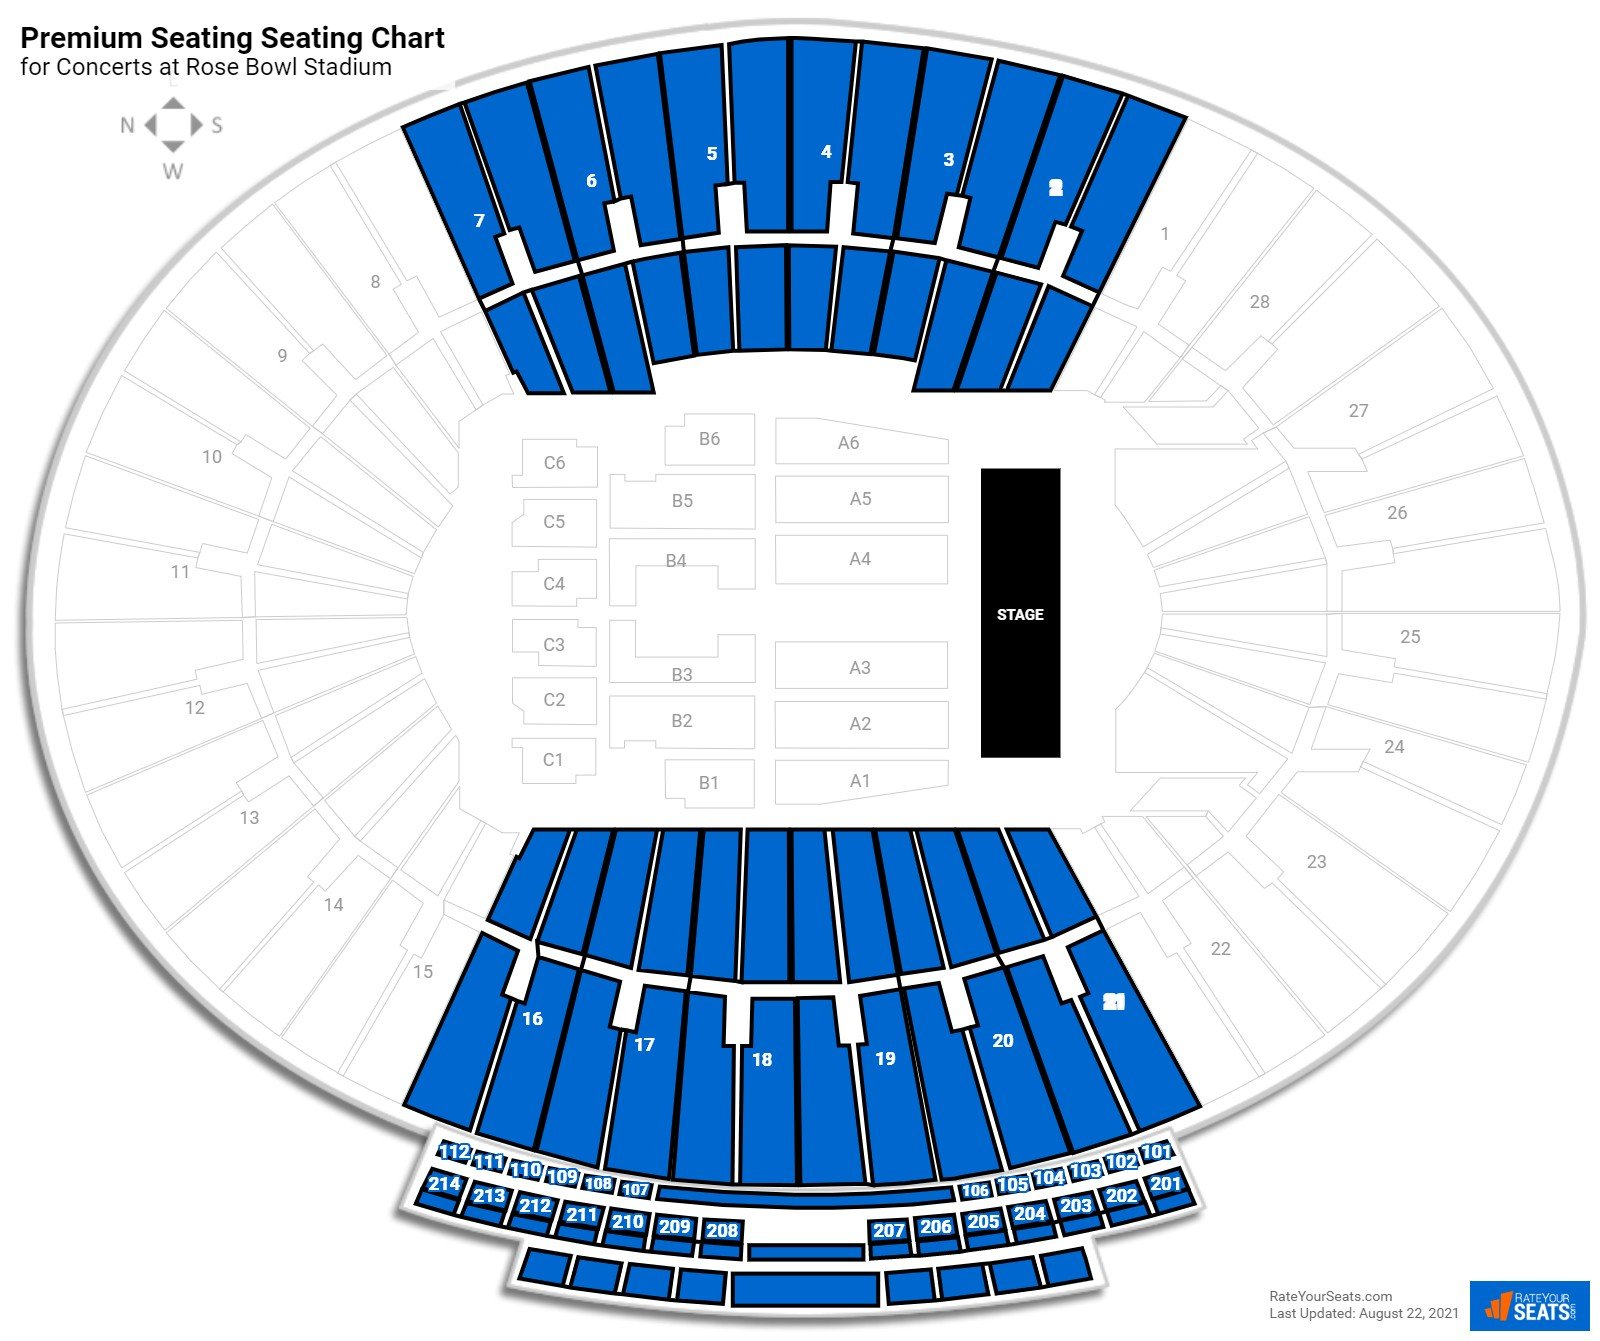 Rose Bowl Stadium Premium Seating